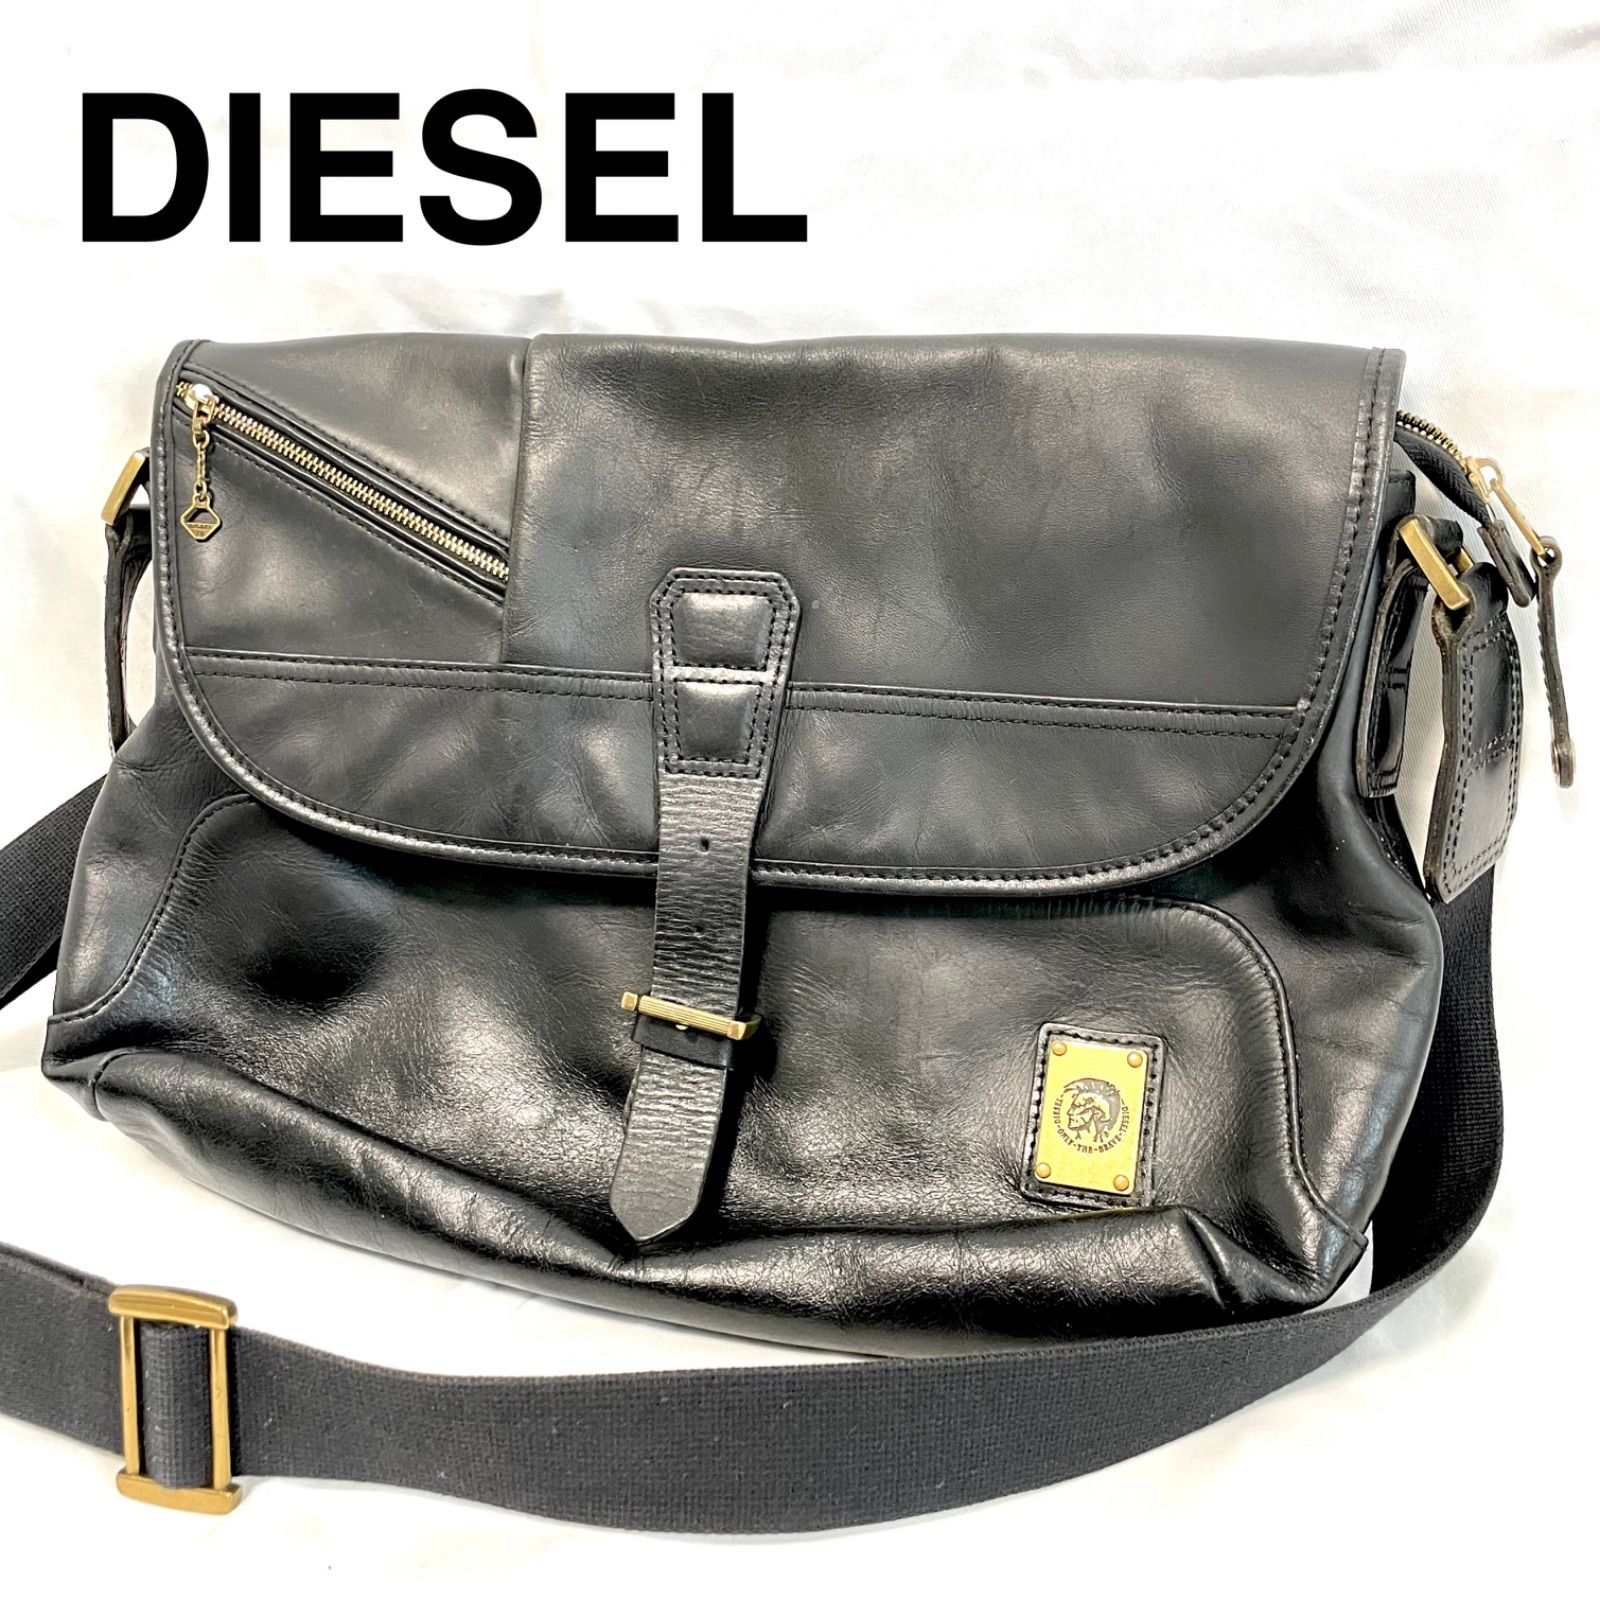 ディーゼル／DIESEL バッグ ショルダーバッグ 鞄 メンズ 男性 男性用レザー 革 本革 ブラック 黒  フラップ式